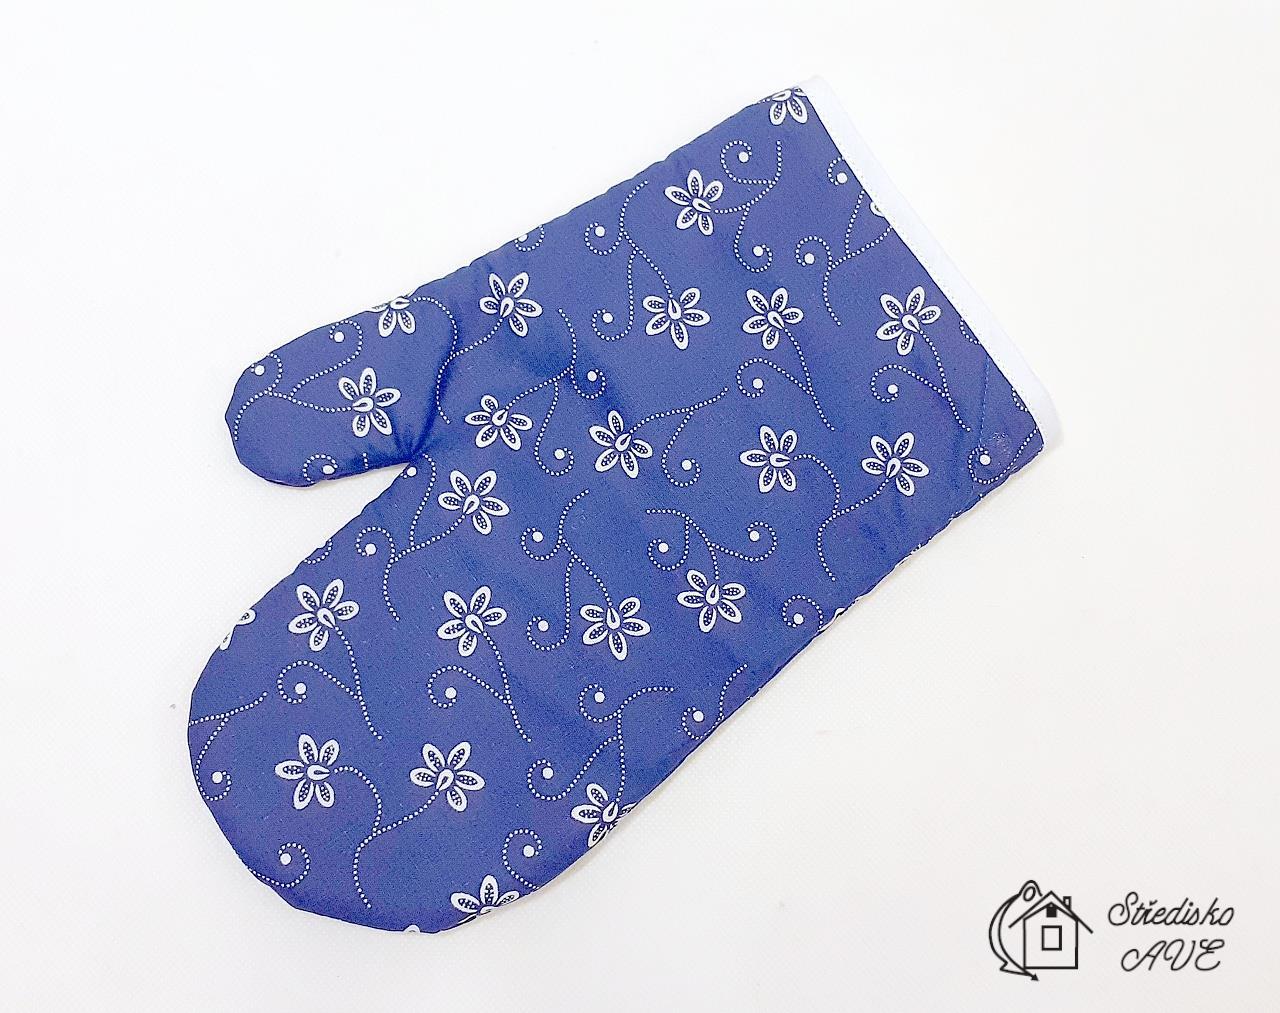 Chňapka rukavice - vzor modrotisk bílý květ